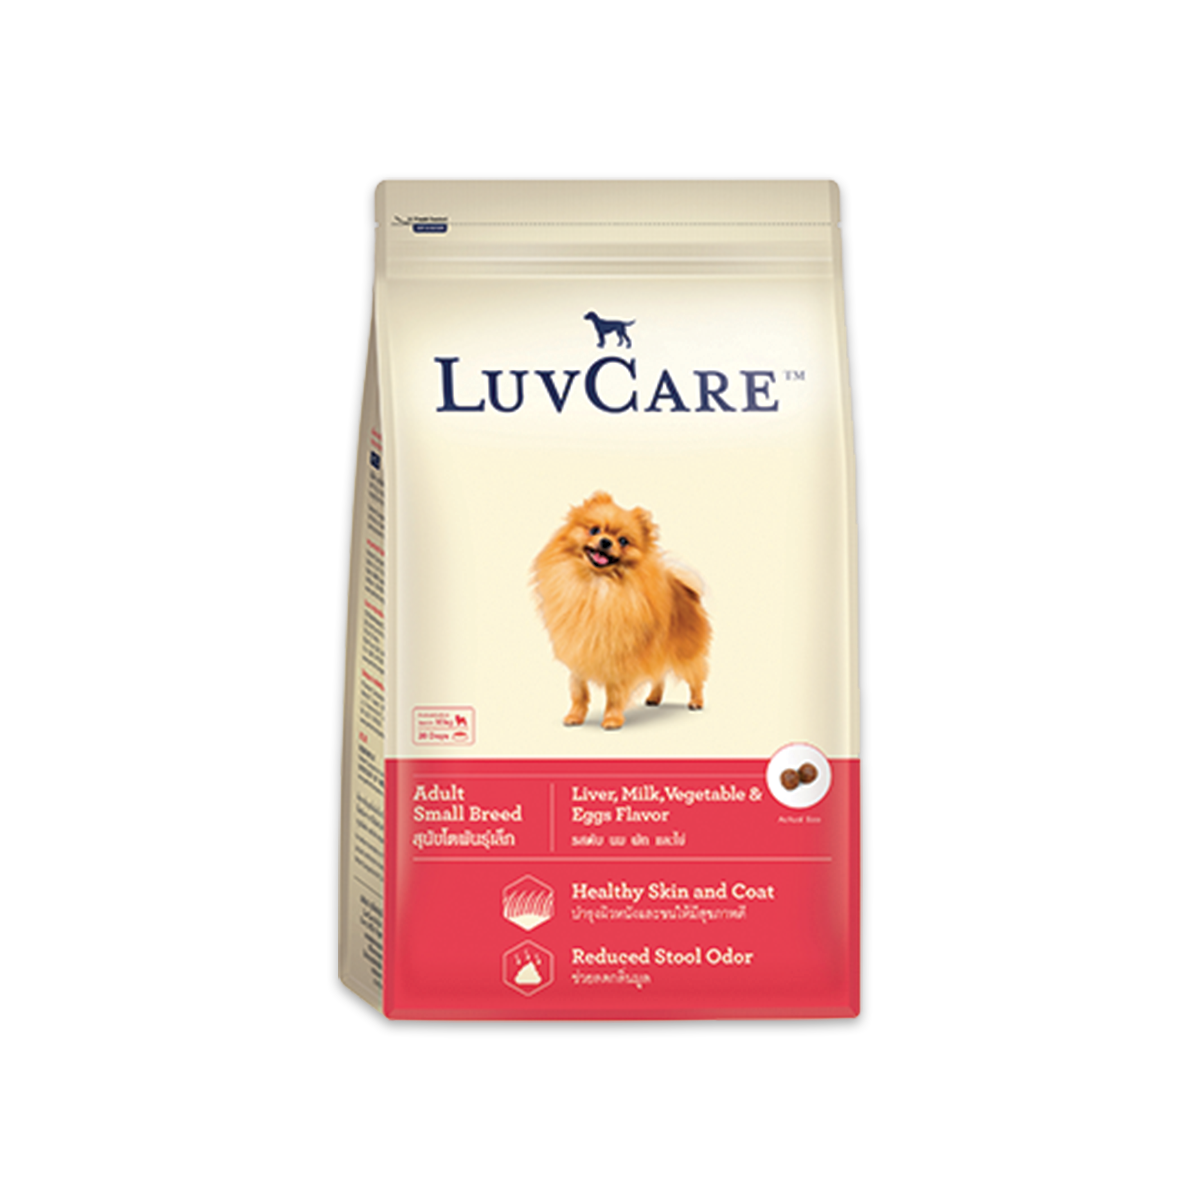 LuvCare เลิฟแคร์ อาหารสุนัขสำหรับสุนัขโต พันธุ์เล็ก รสตับ นม ผักและไข่